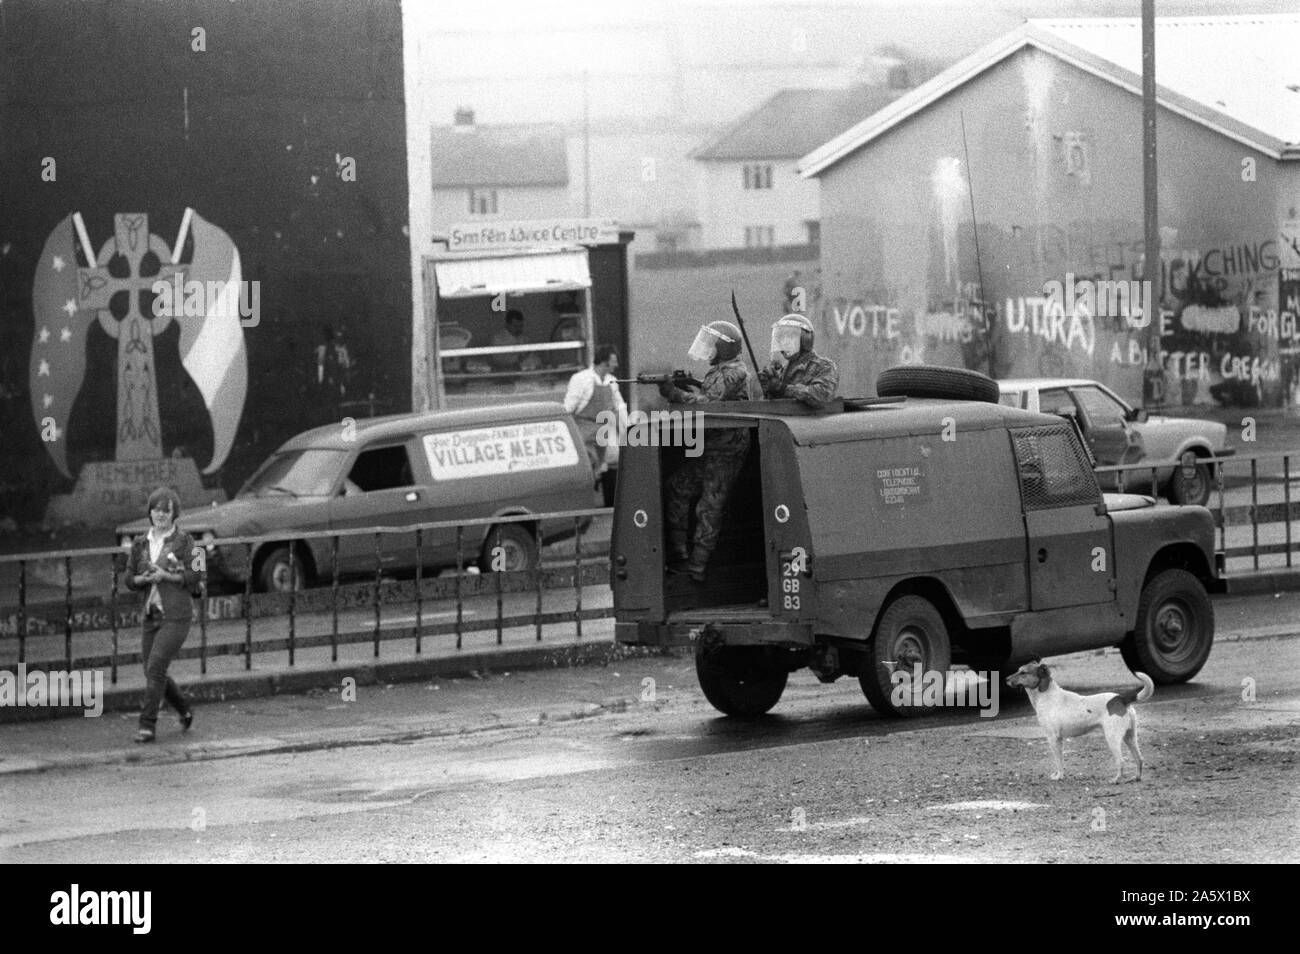 Les troubles des années 1980 troupes britanniques Derry Irlande du Nord Londonderry 1983 soldats britanniques en patrouille dans un véhicule blindé des années 80 HOMER SYKES Banque D'Images